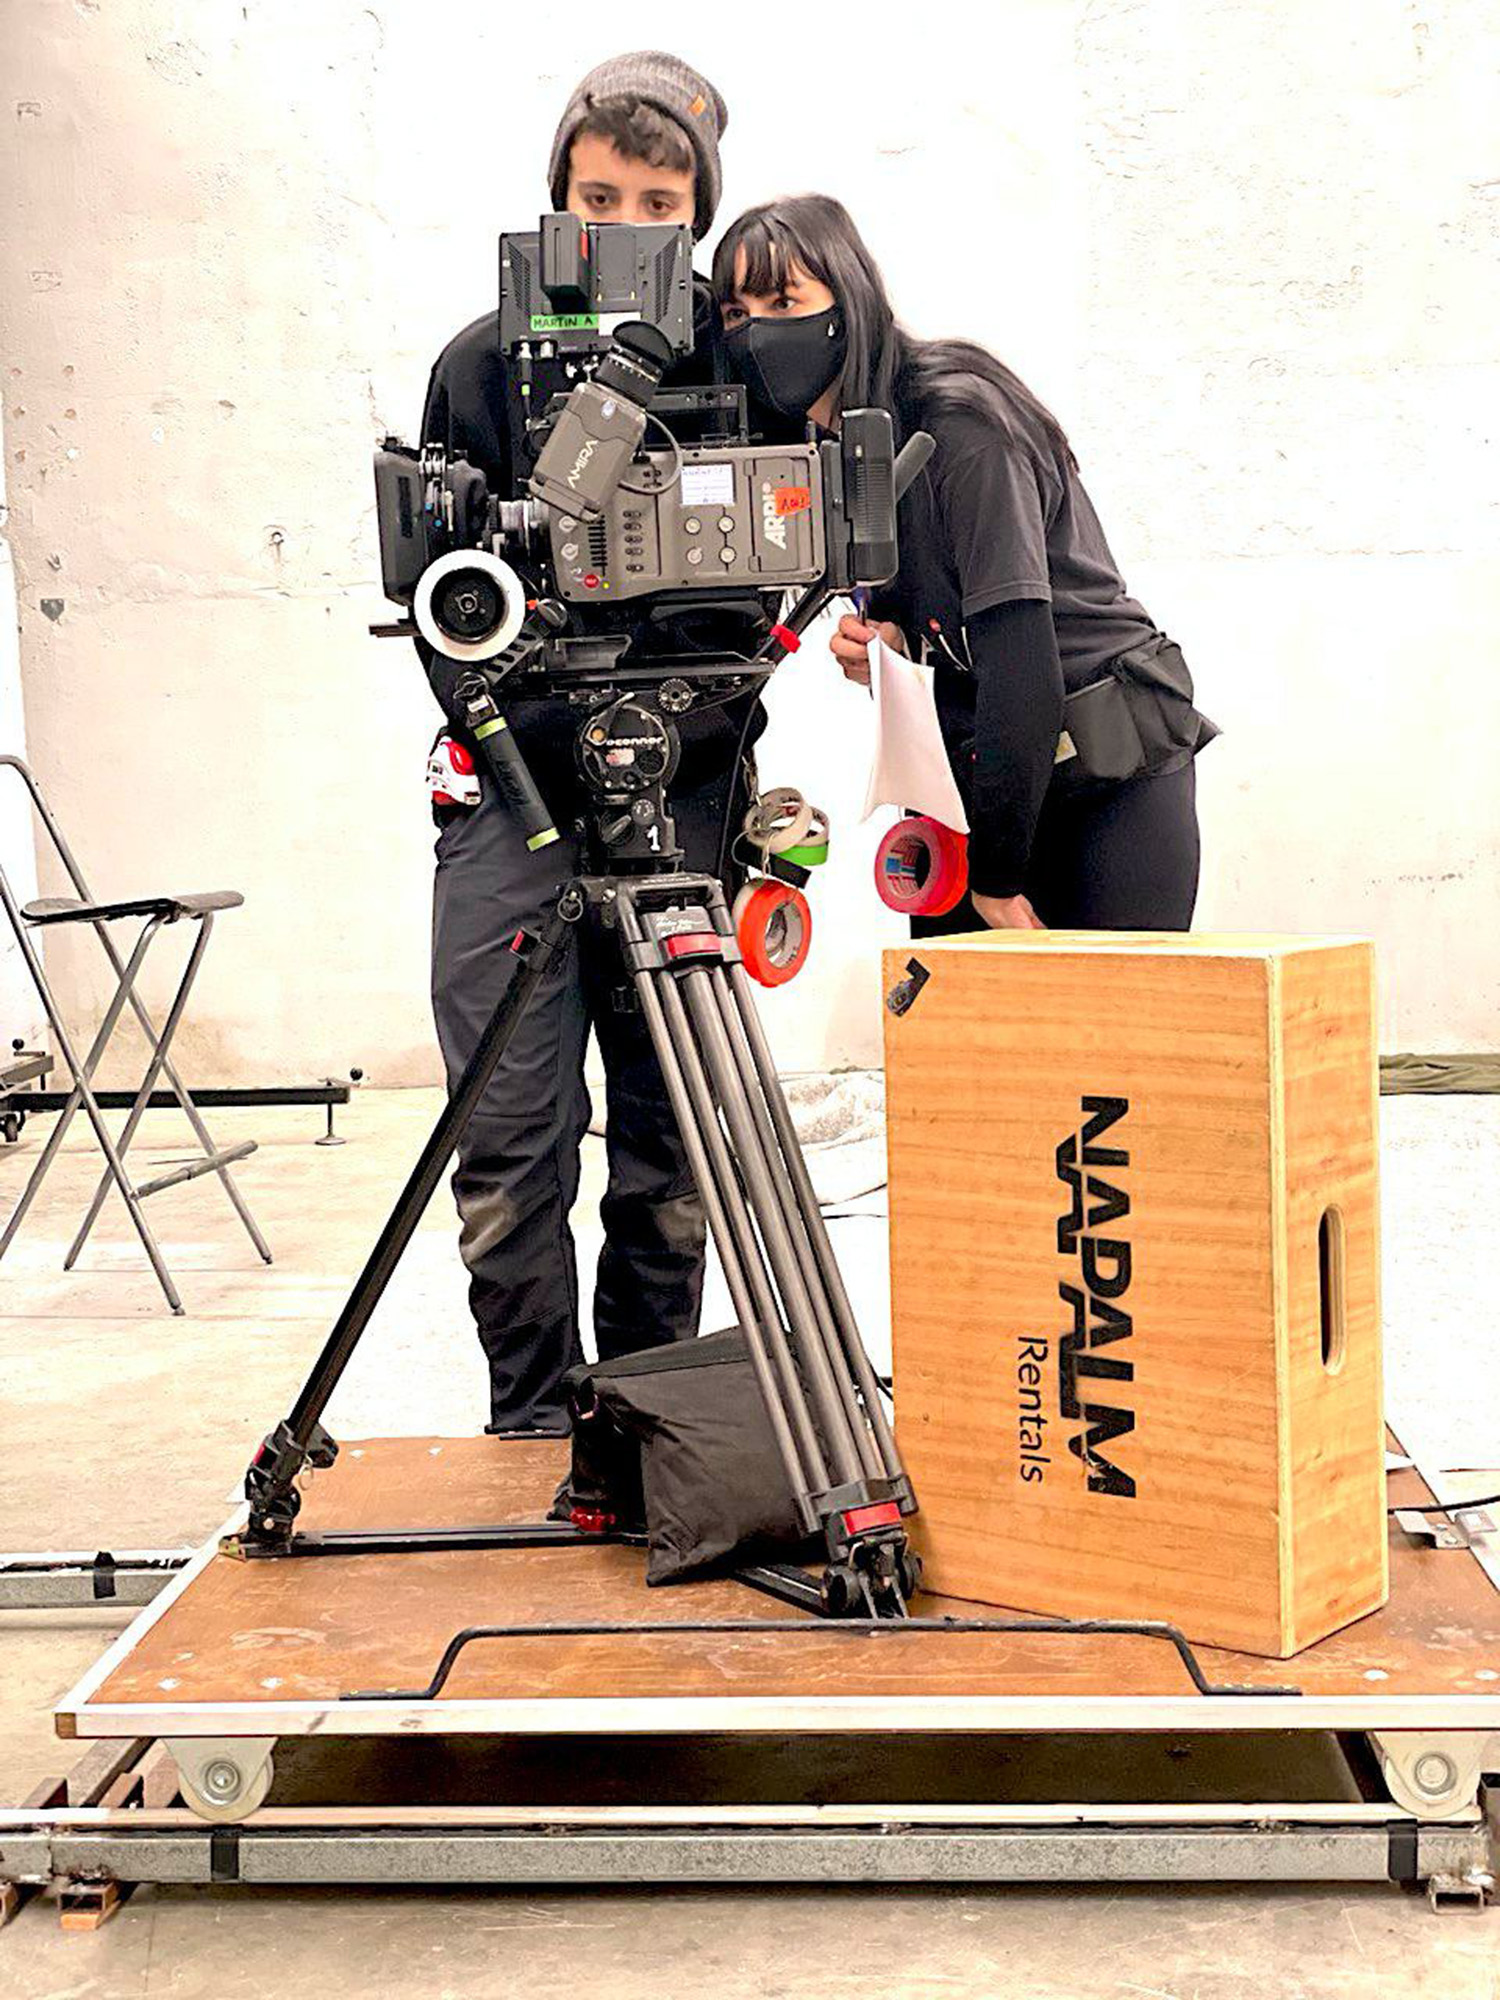 Equipo videografos con cámaras preparadas para grabar un videoclip